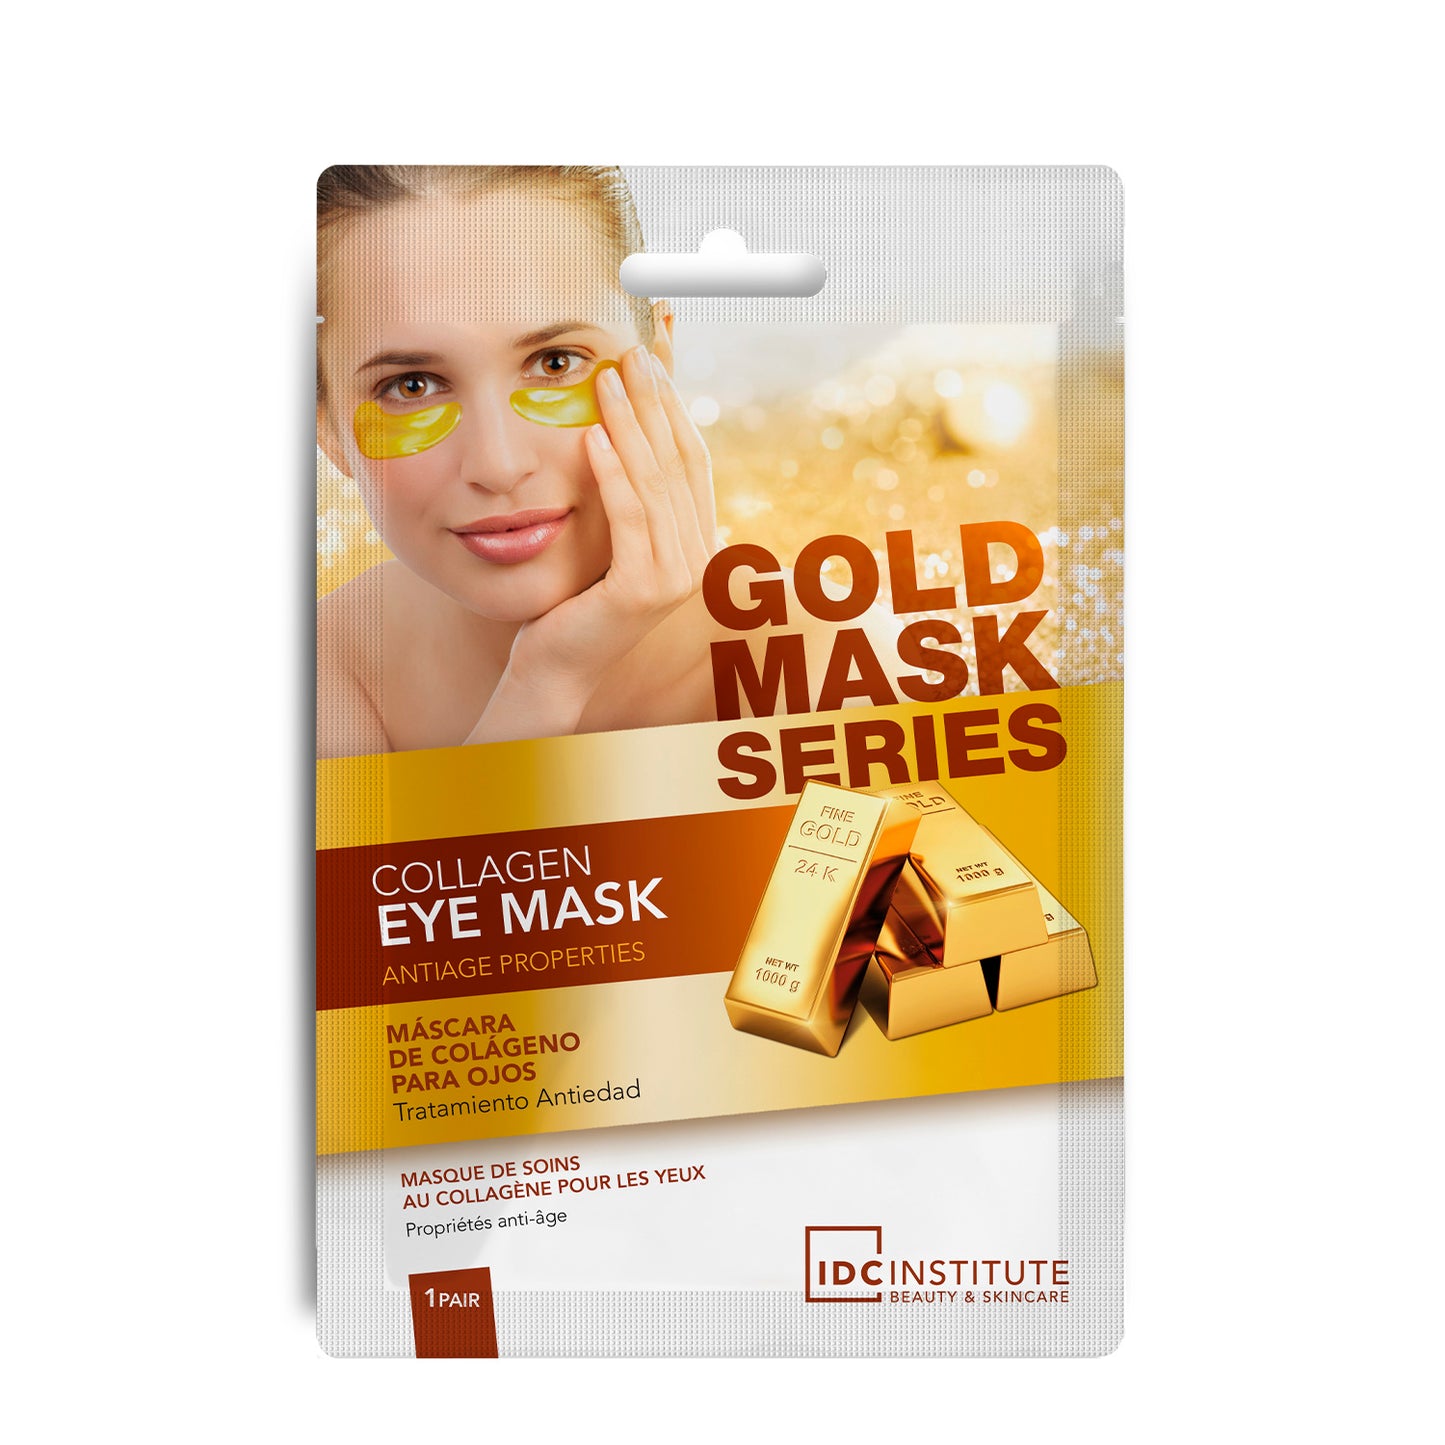 GOLD MASK SERIES - Maschera per occhi al Collagene | Sgonfia le borse e attenua le rughe d'espressione